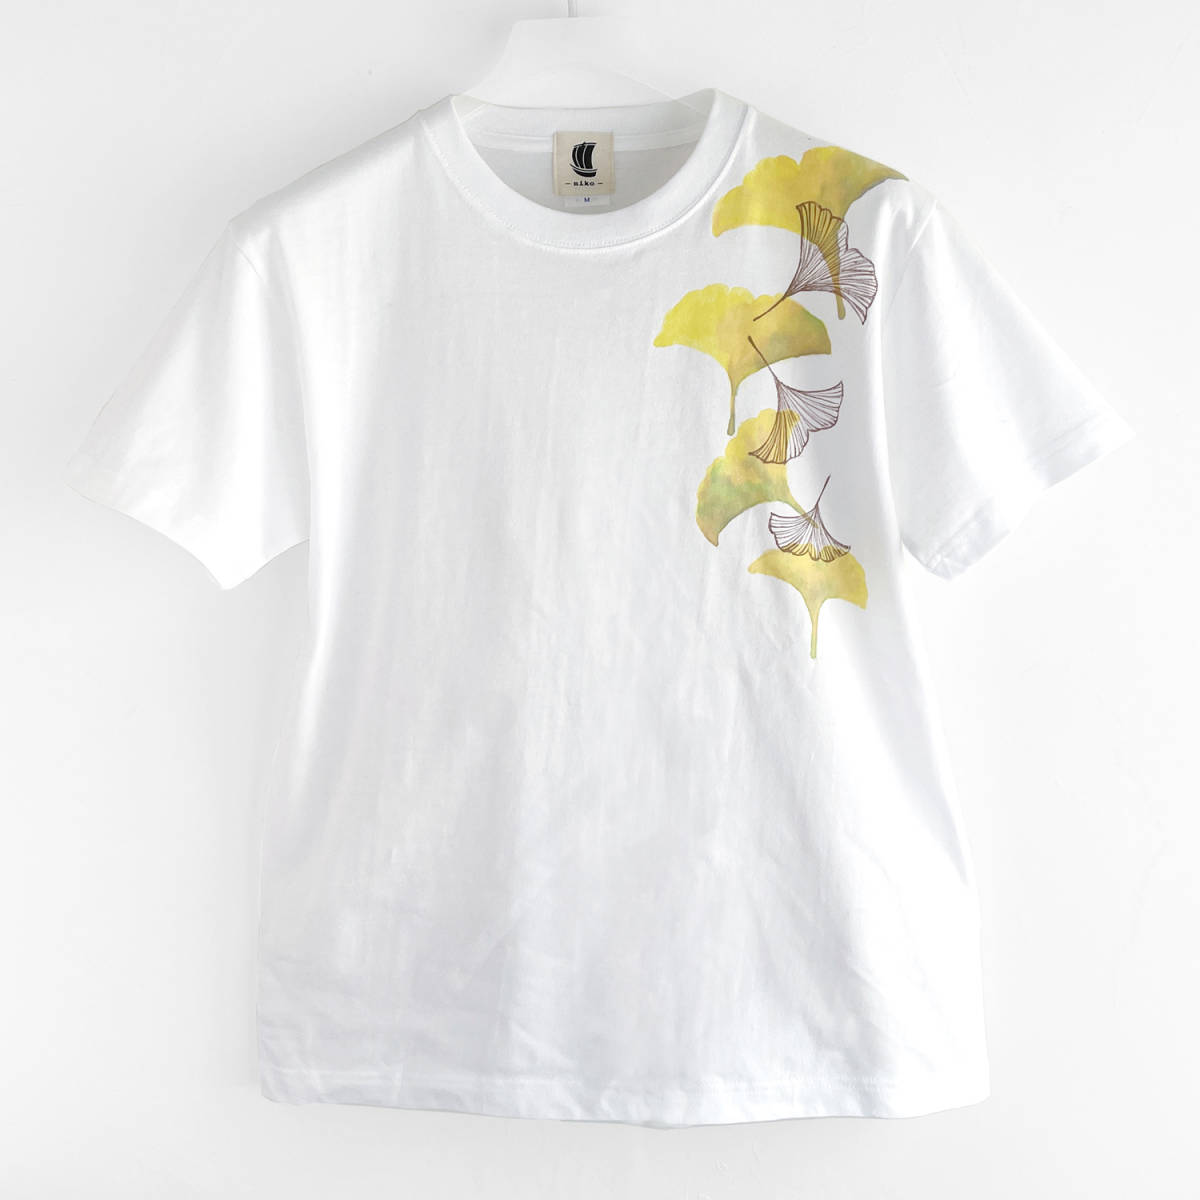 Мужская футболка, размер L, футболка с узором гинкго, белый, ручной работы, нарисованная от руки футболка, гинкго, Большой размер, Круглый вырез, с рисунком